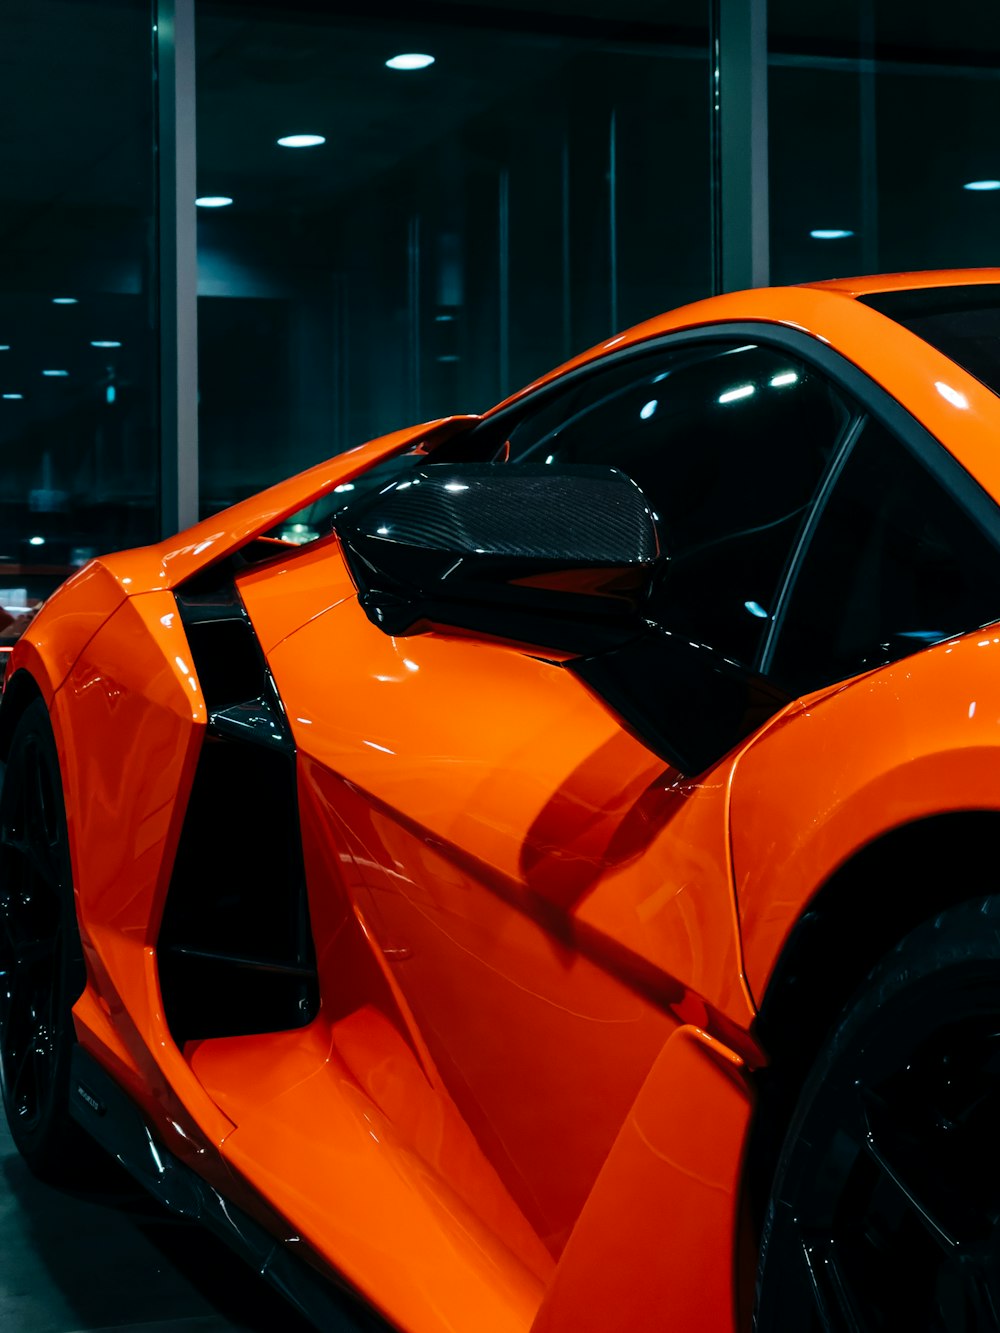 an orange sports car parked in a garage